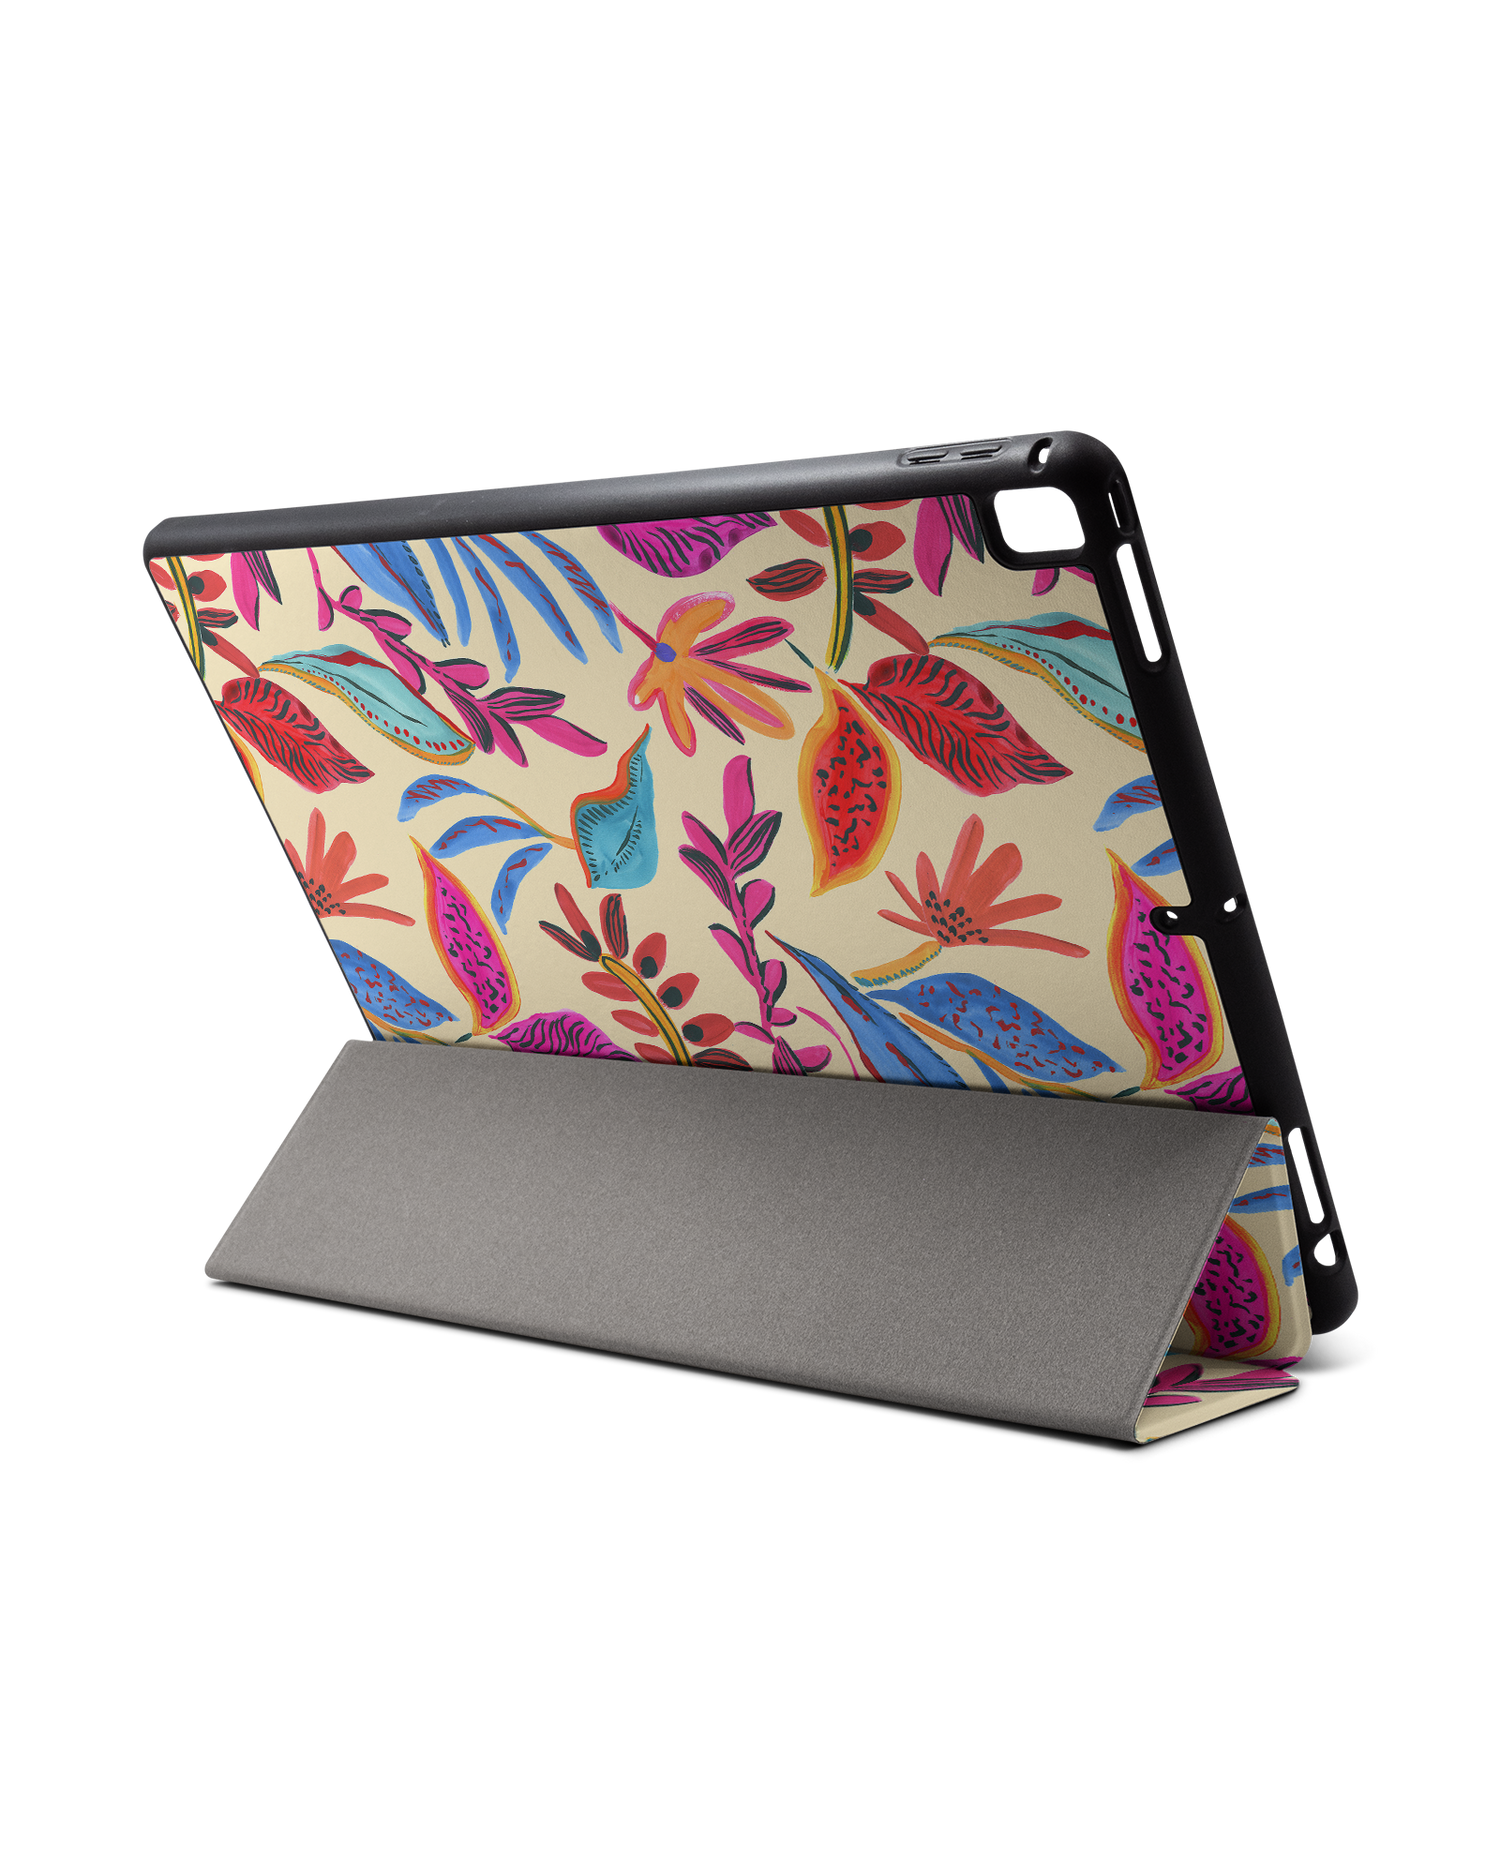 Painterly Spring Leaves iPad Hülle mit Stifthalter für Apple iPad Pro 2 12.9'' (2017): Aufgestellt im Querformat von hinten